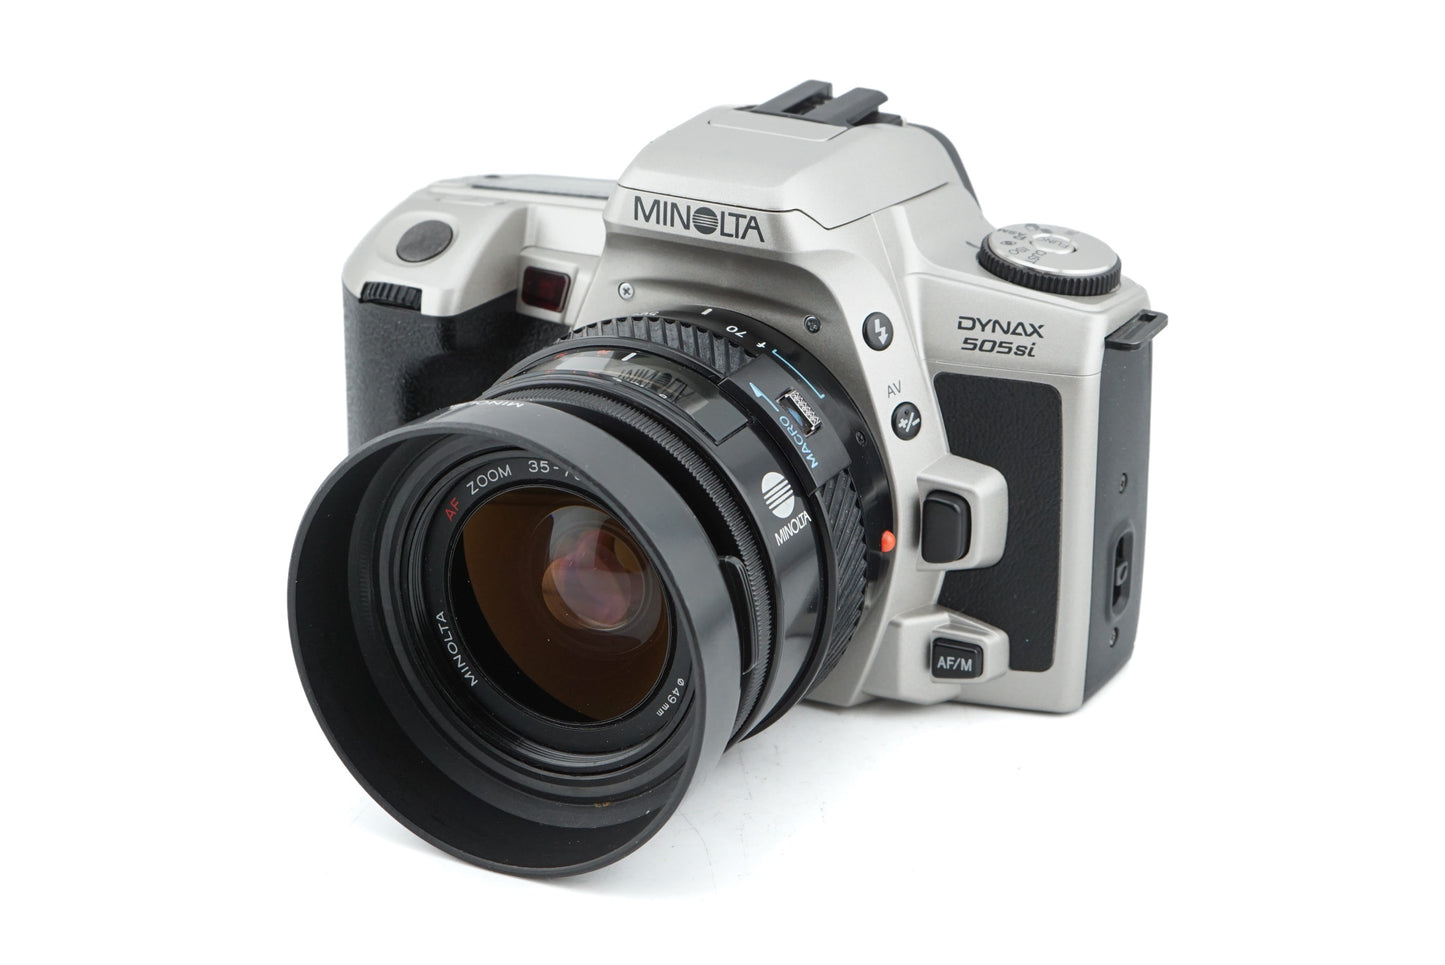 Minolta Dynax 505si - Camera